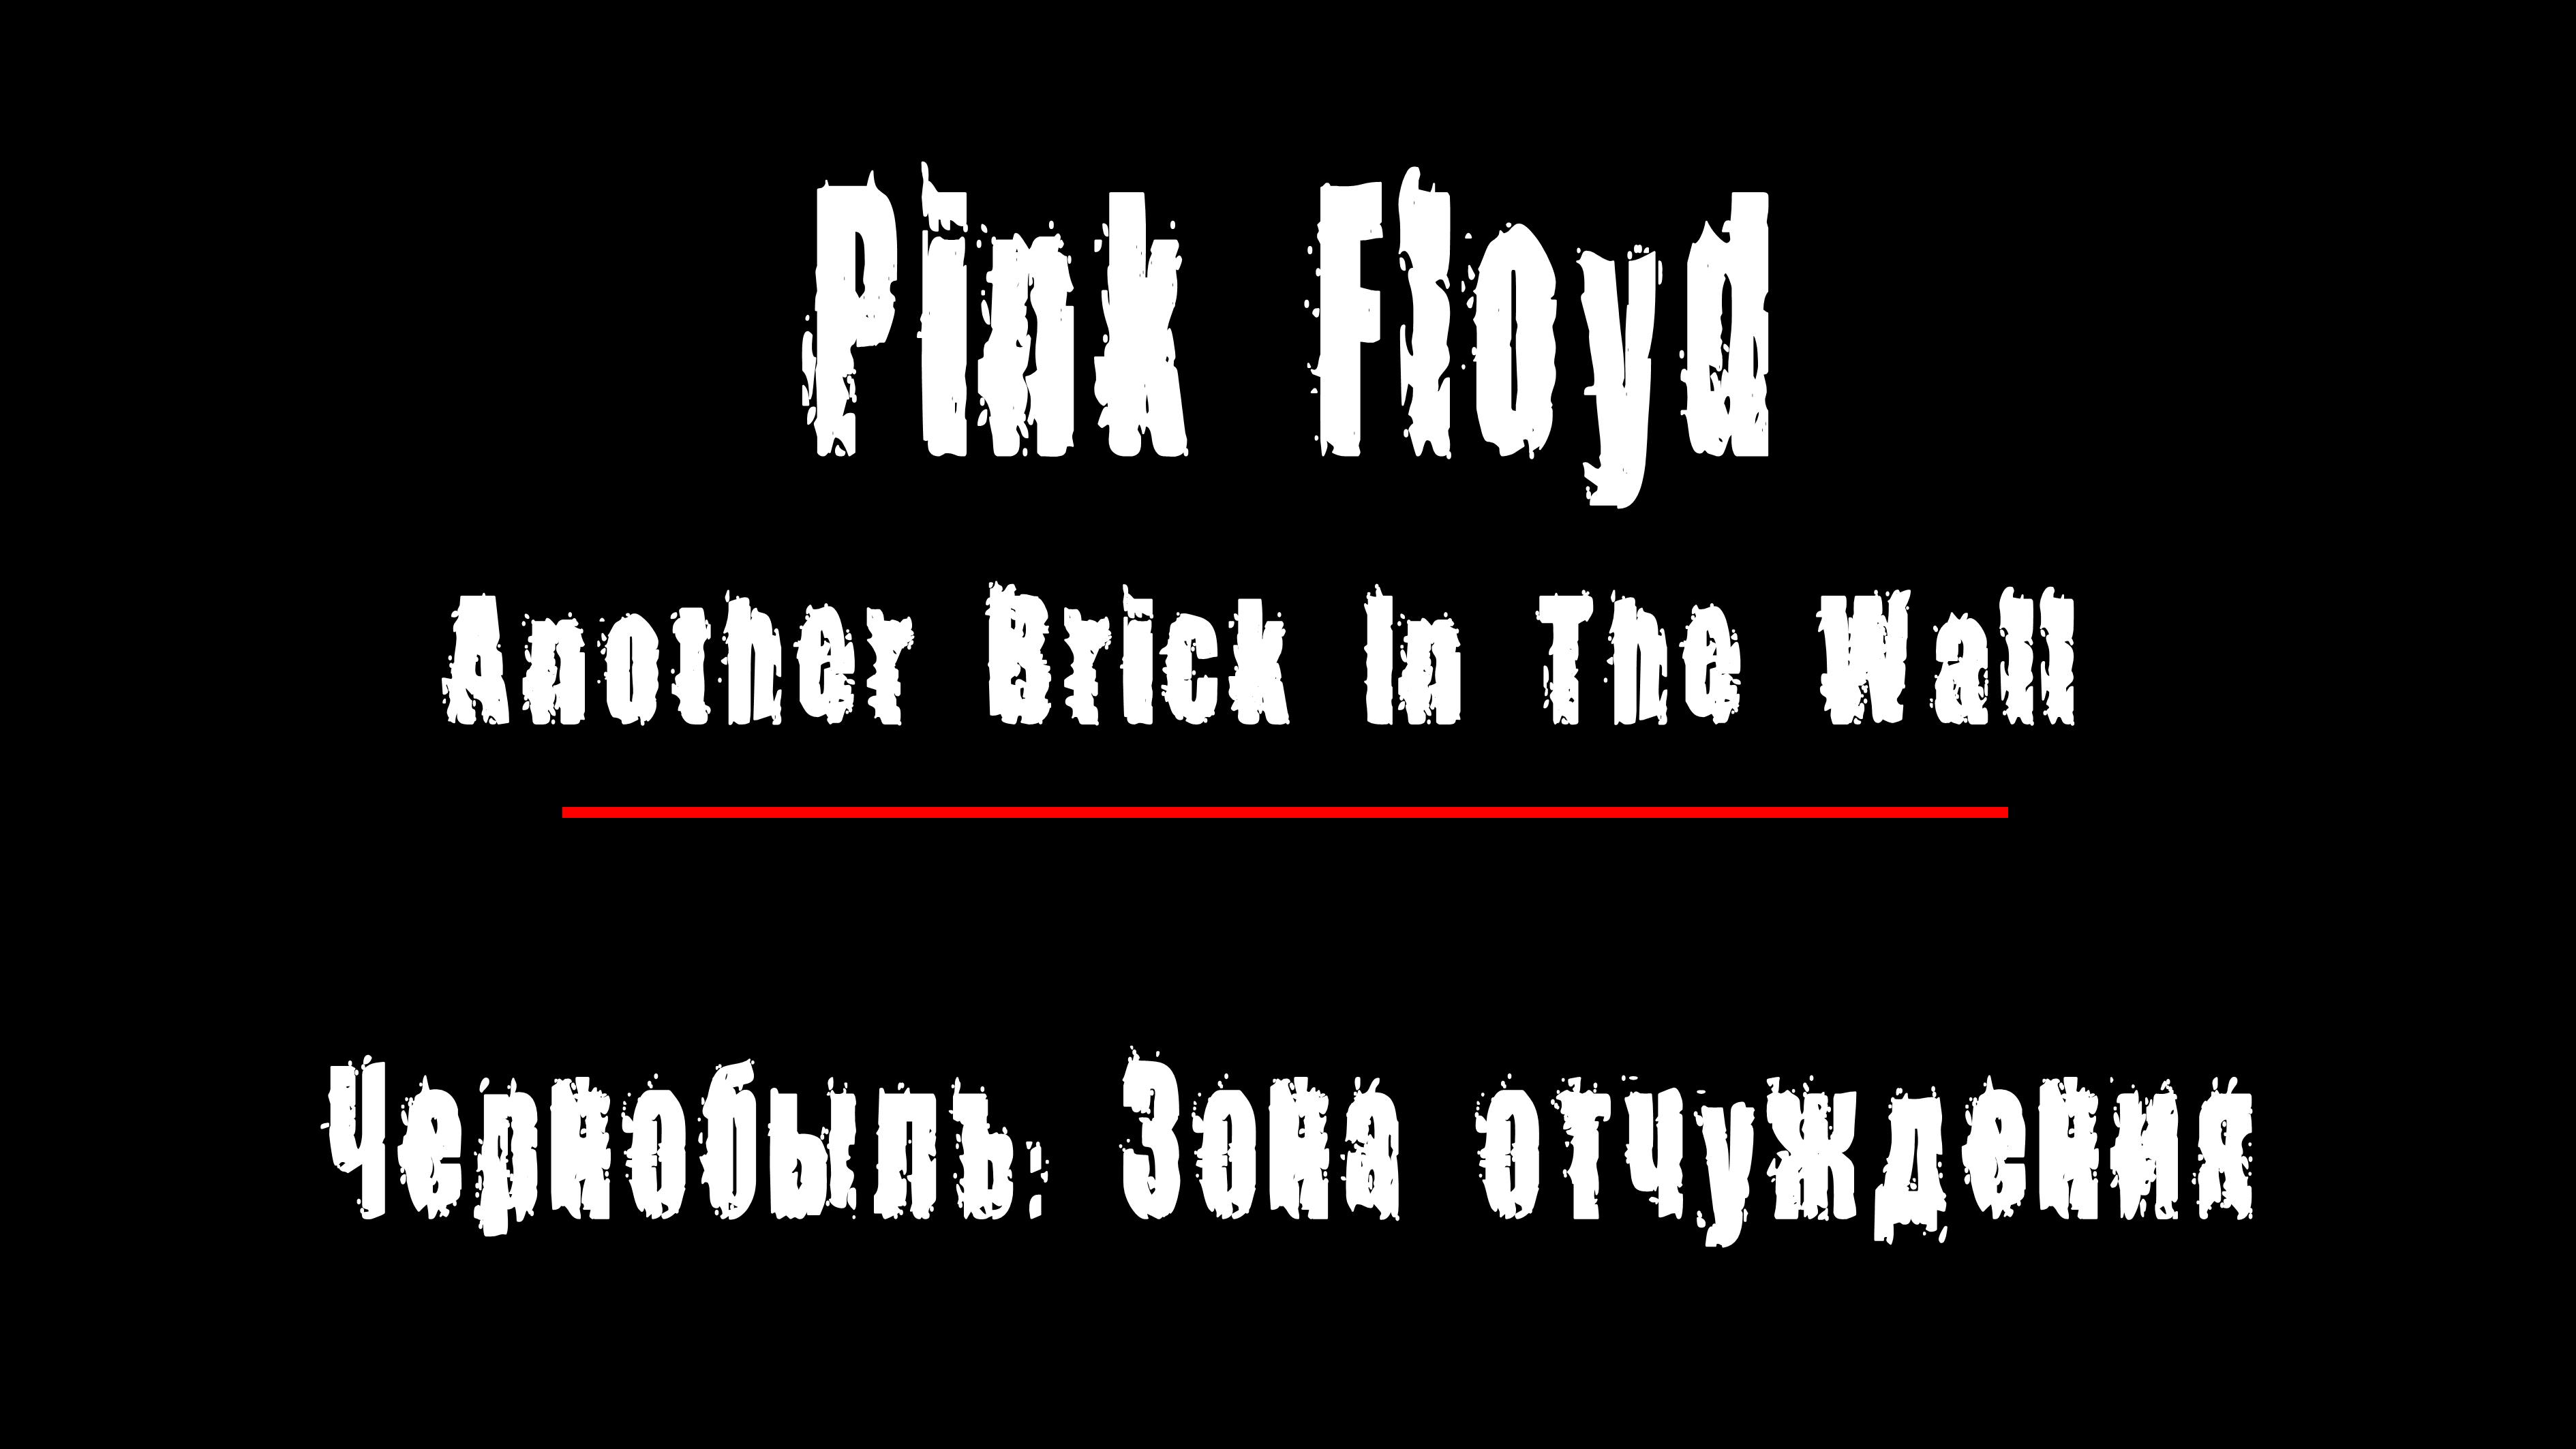 "ANOTHER BRICK IN THE WALL" - группа "Pink Floyd". Чернобыль: Зона Отчуждения, Припять.